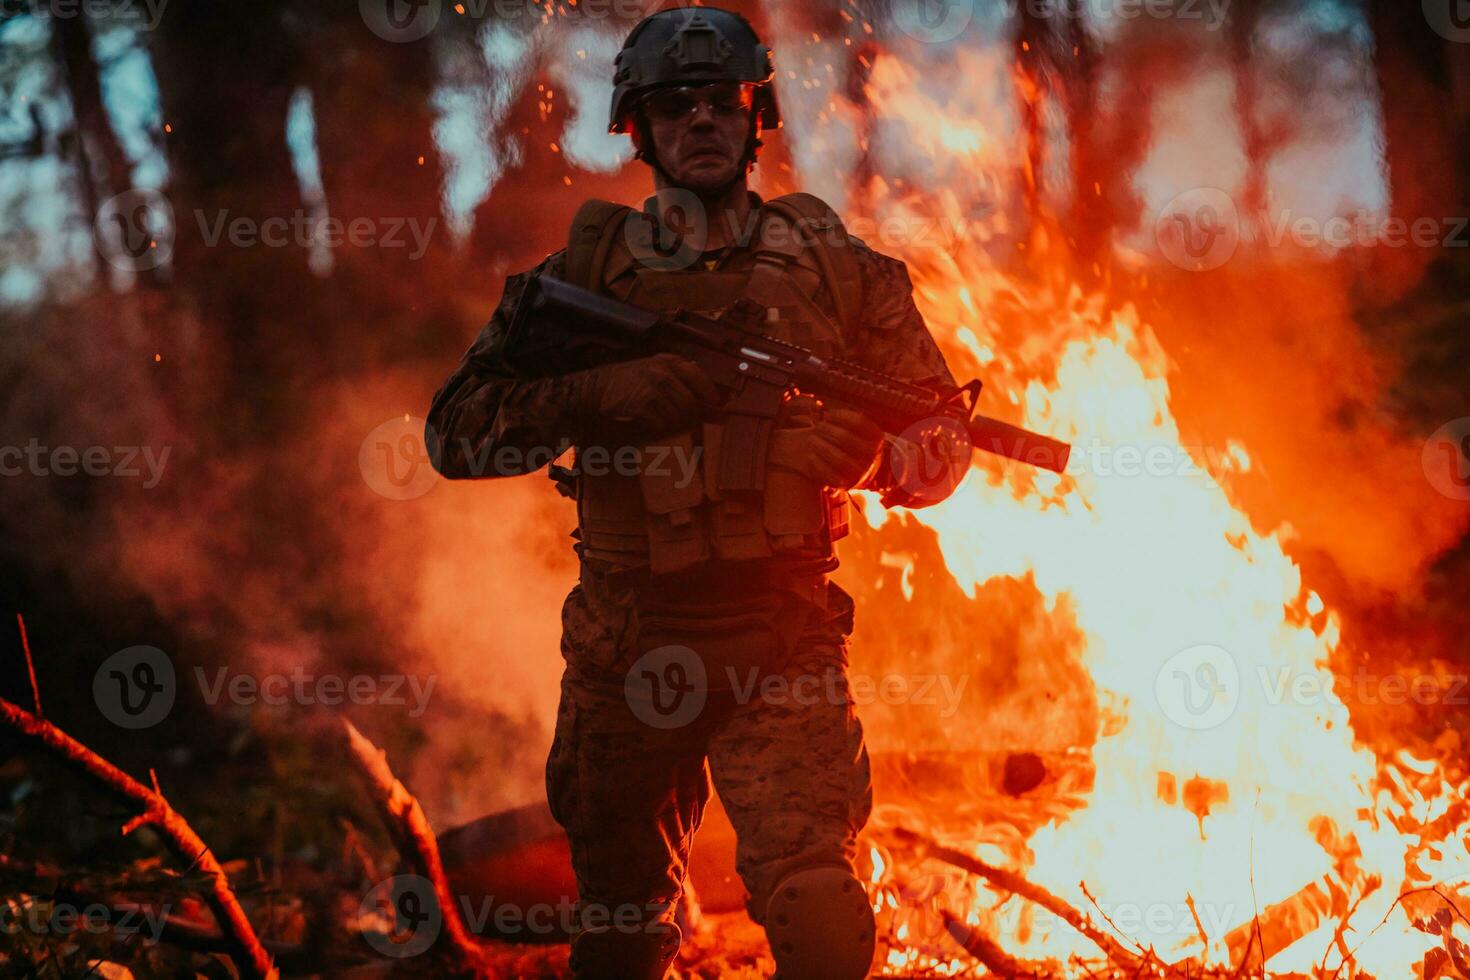 soldat i verkan på natt i de skog område. natt tid militär uppdrag Hoppar över brand foto